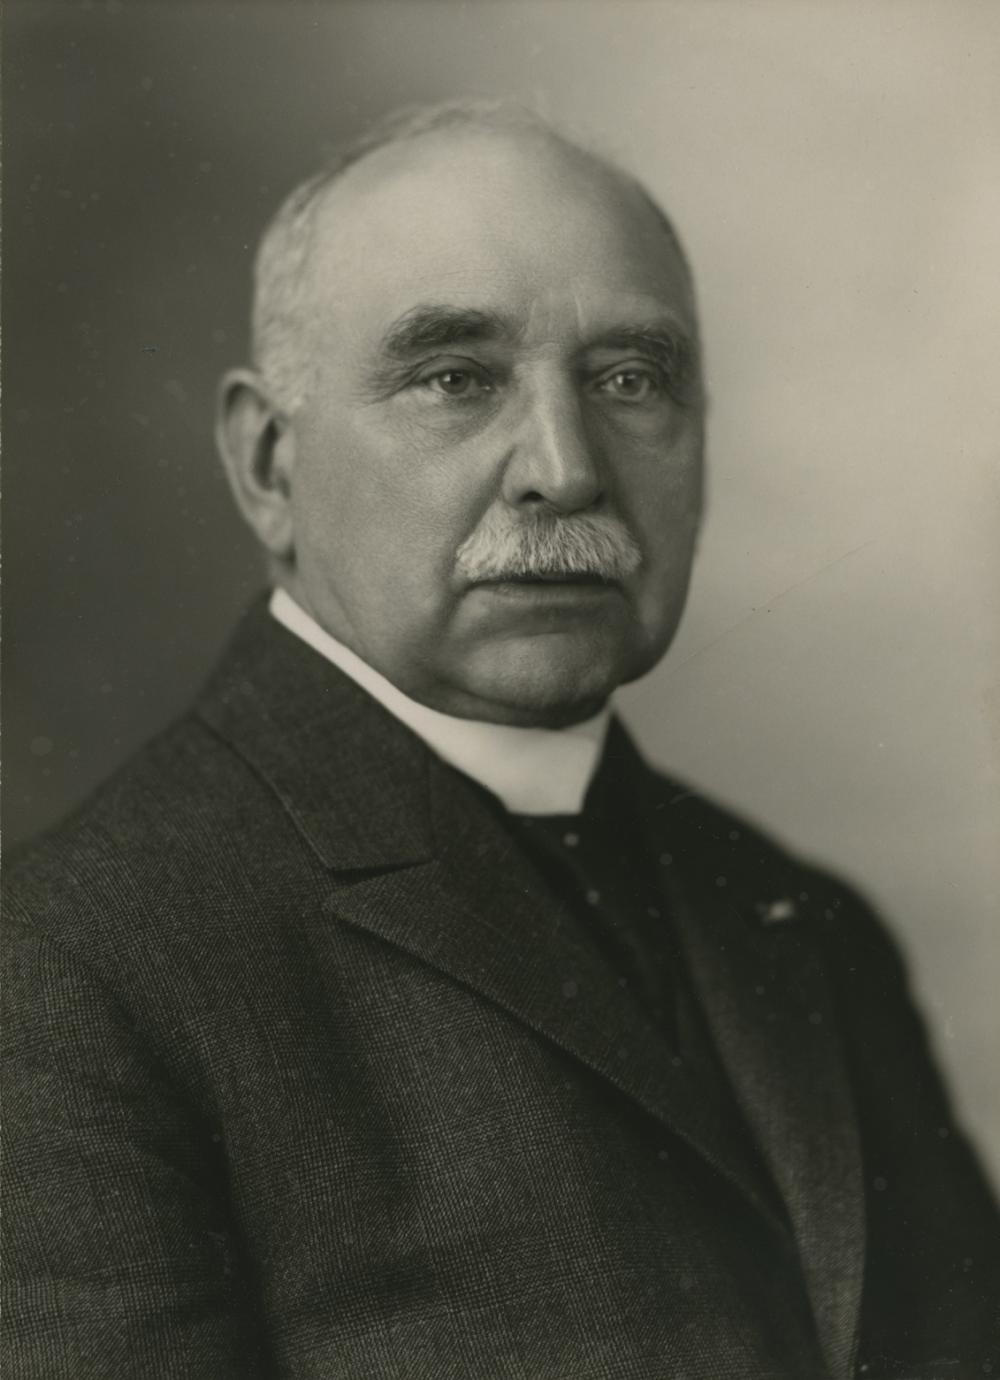 Portret van Johannes Verheul Dzn door M.J. Donker, 14-2-1940